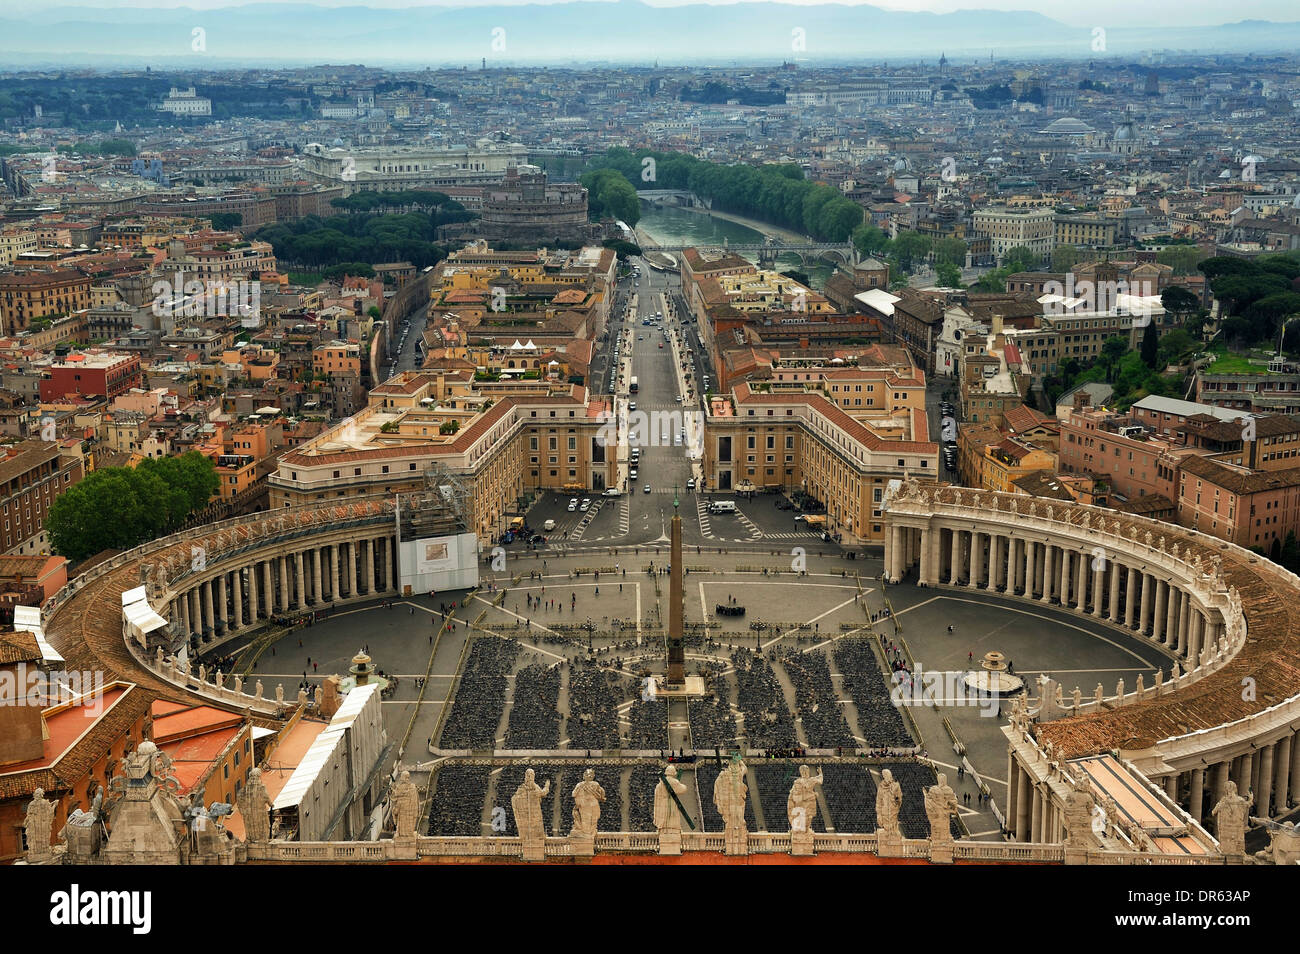 La Place Saint Pierre et vue aérienne de Rome, Italie Banque D'Images